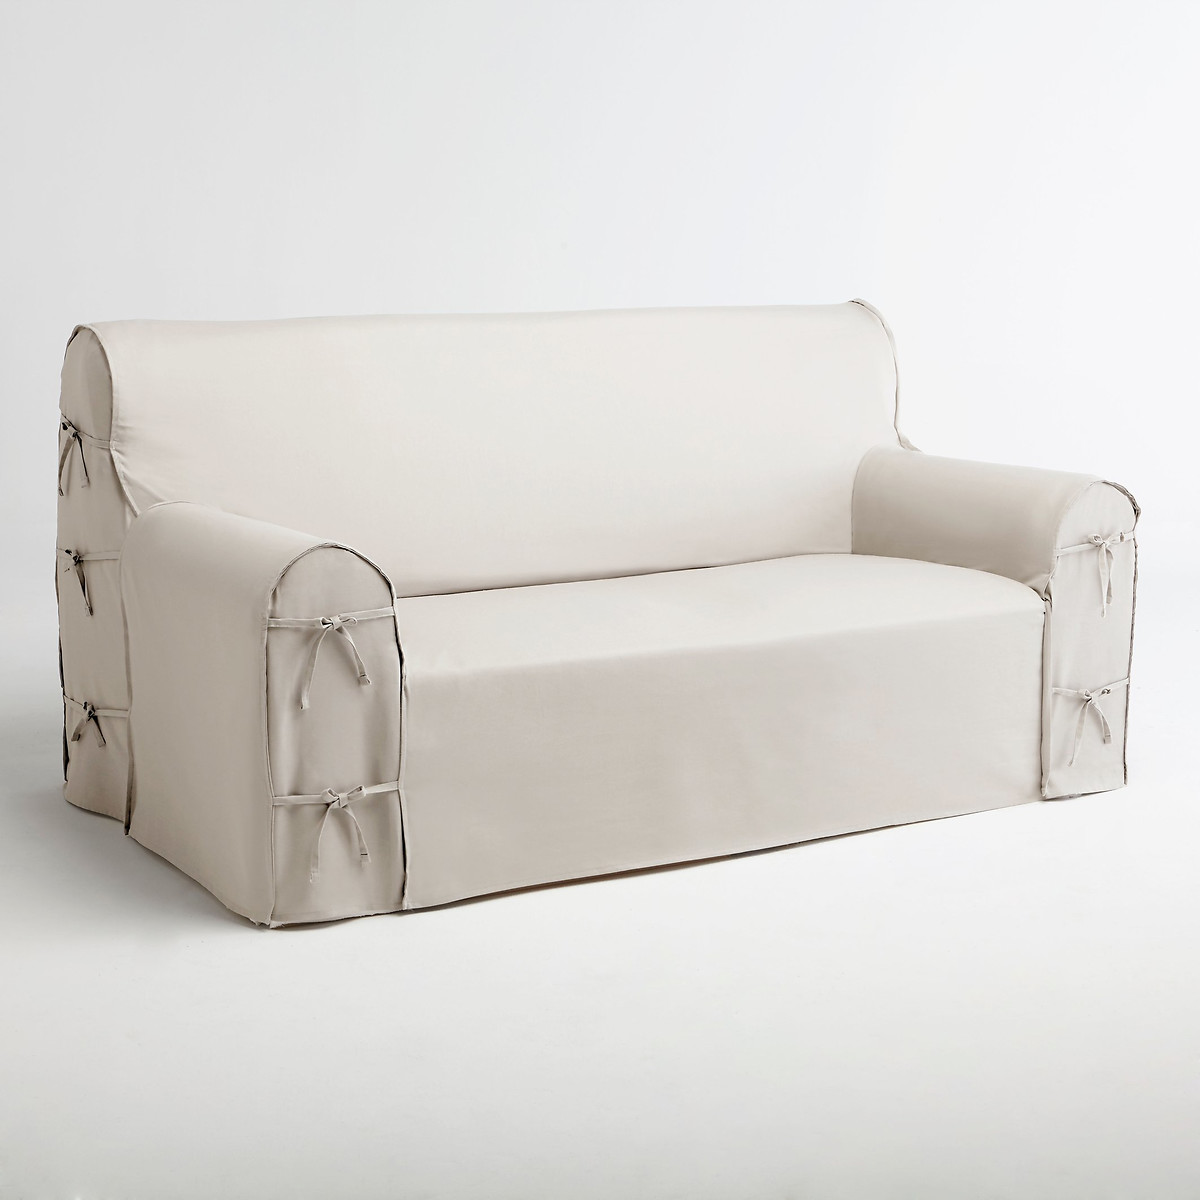 Чехол для дивана scenarioLa Redoute Interieurs купить в интернет-магазине